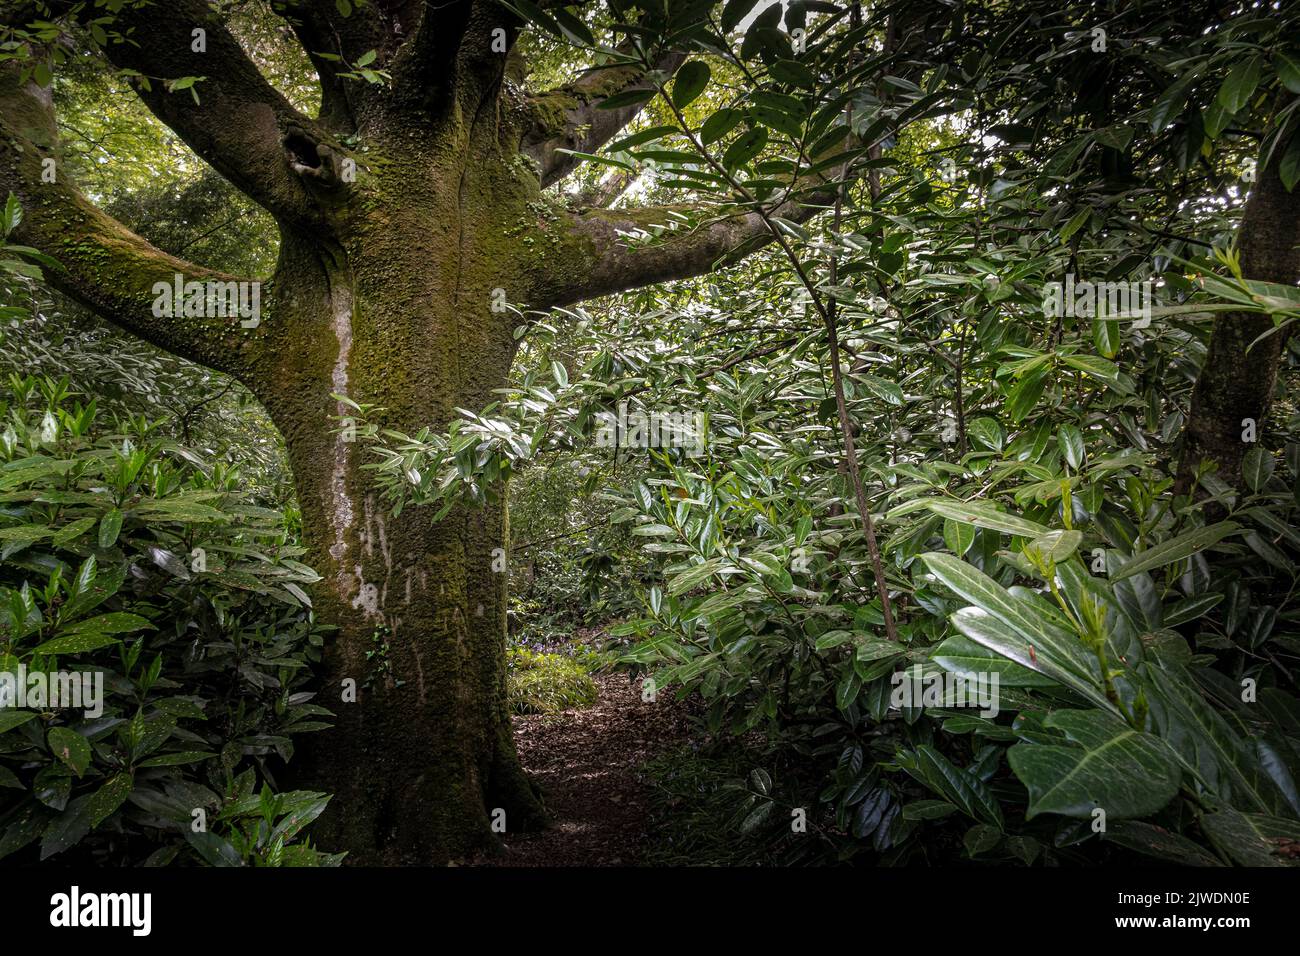 Un albero coperto di muschio nel selvaggio sub-tropicale Penjjick Garden in Cornovaglia. Penjerrick Garden è riconosciuto come Cornovaglia vero giardino nella giungla in Inghilterra Foto Stock